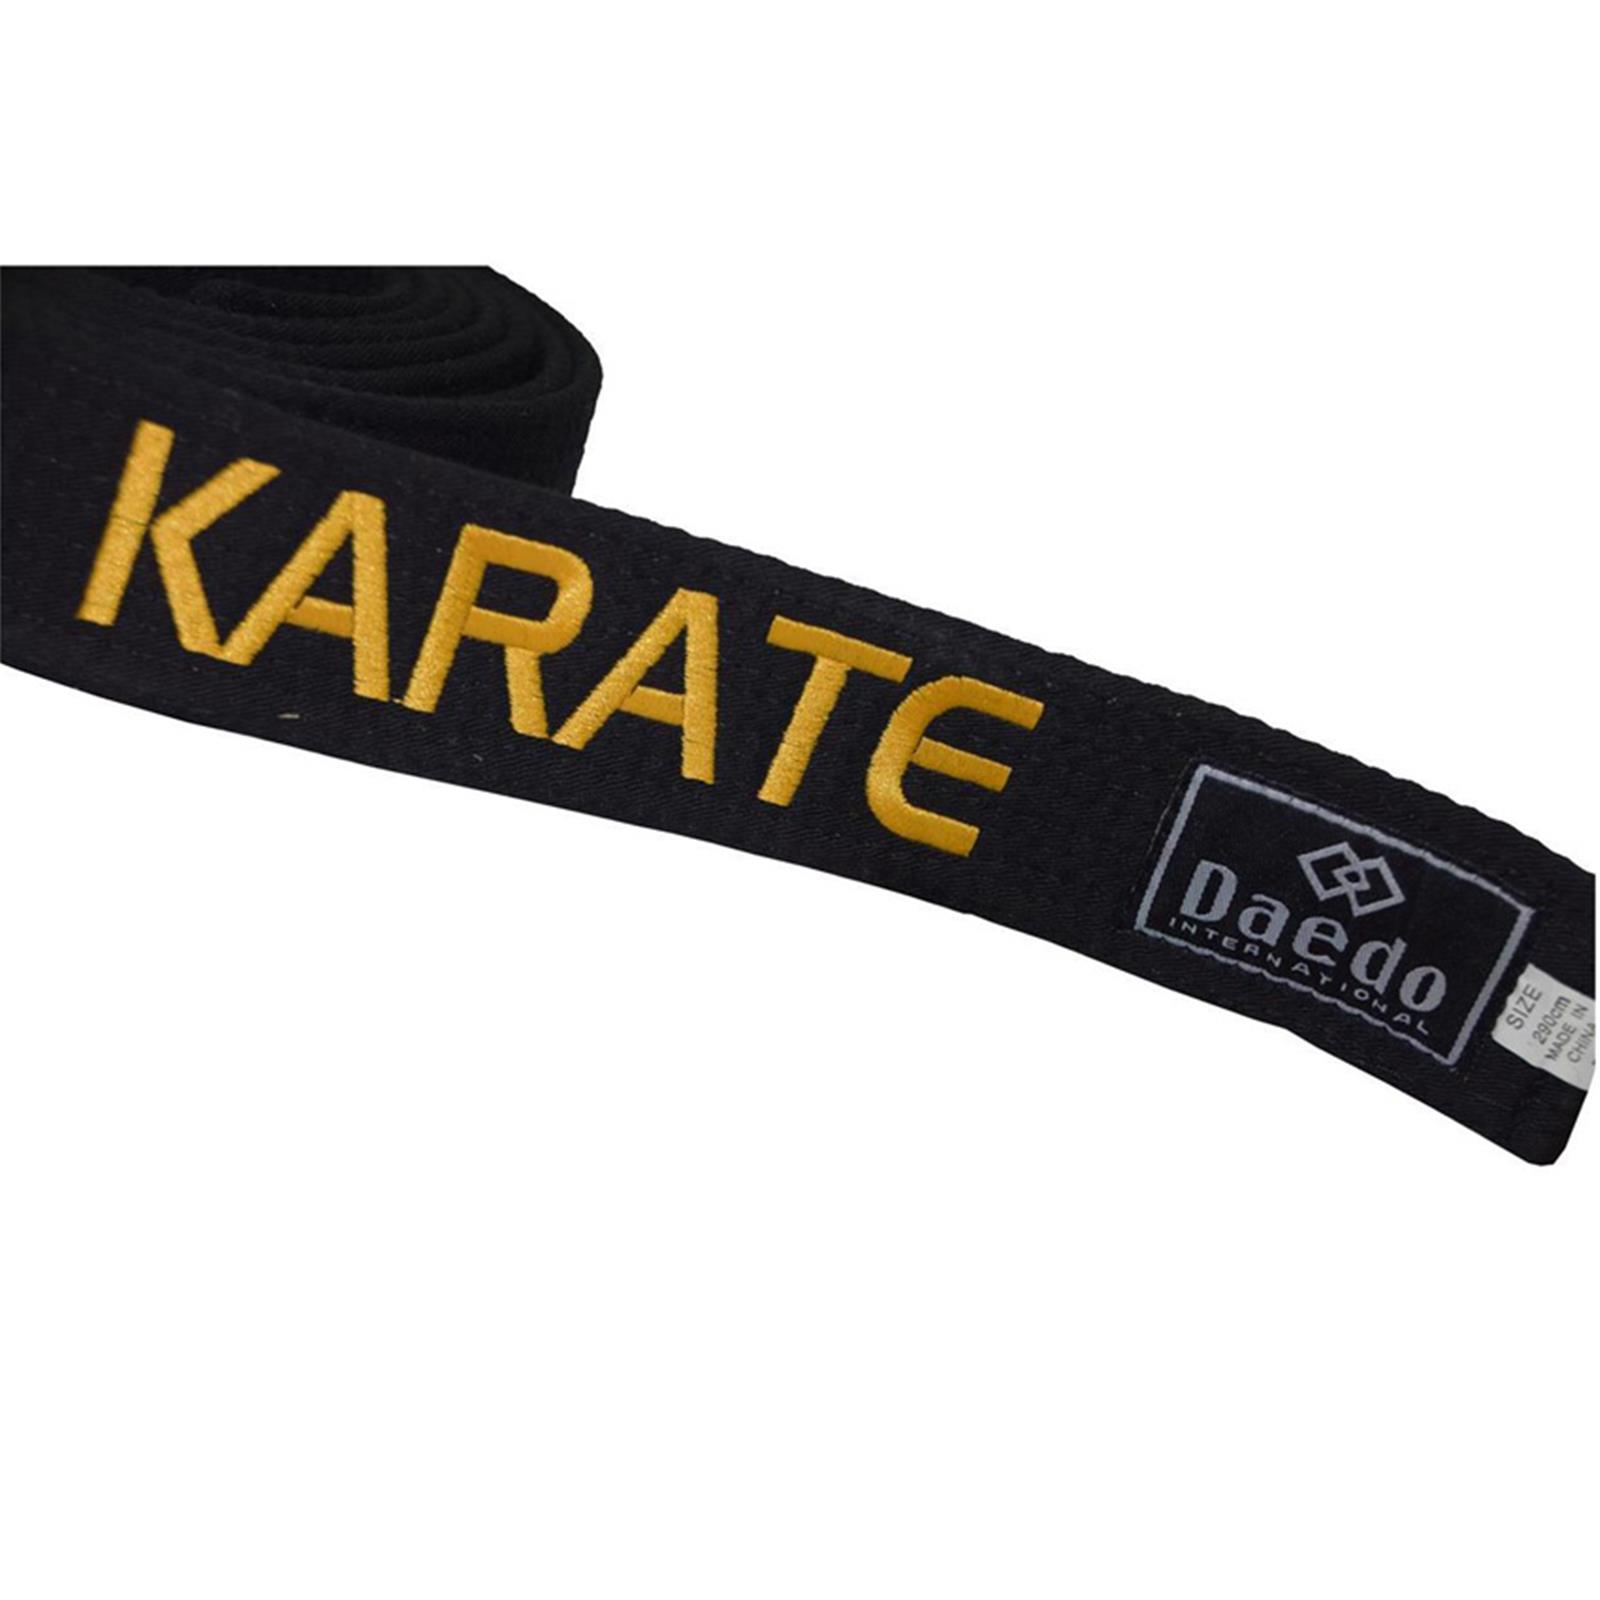 Dae Do Cintura Nera Karate ricamata Oro personalizzata (ALTEZZA 4,5 CM - tag. 4° CM 260)